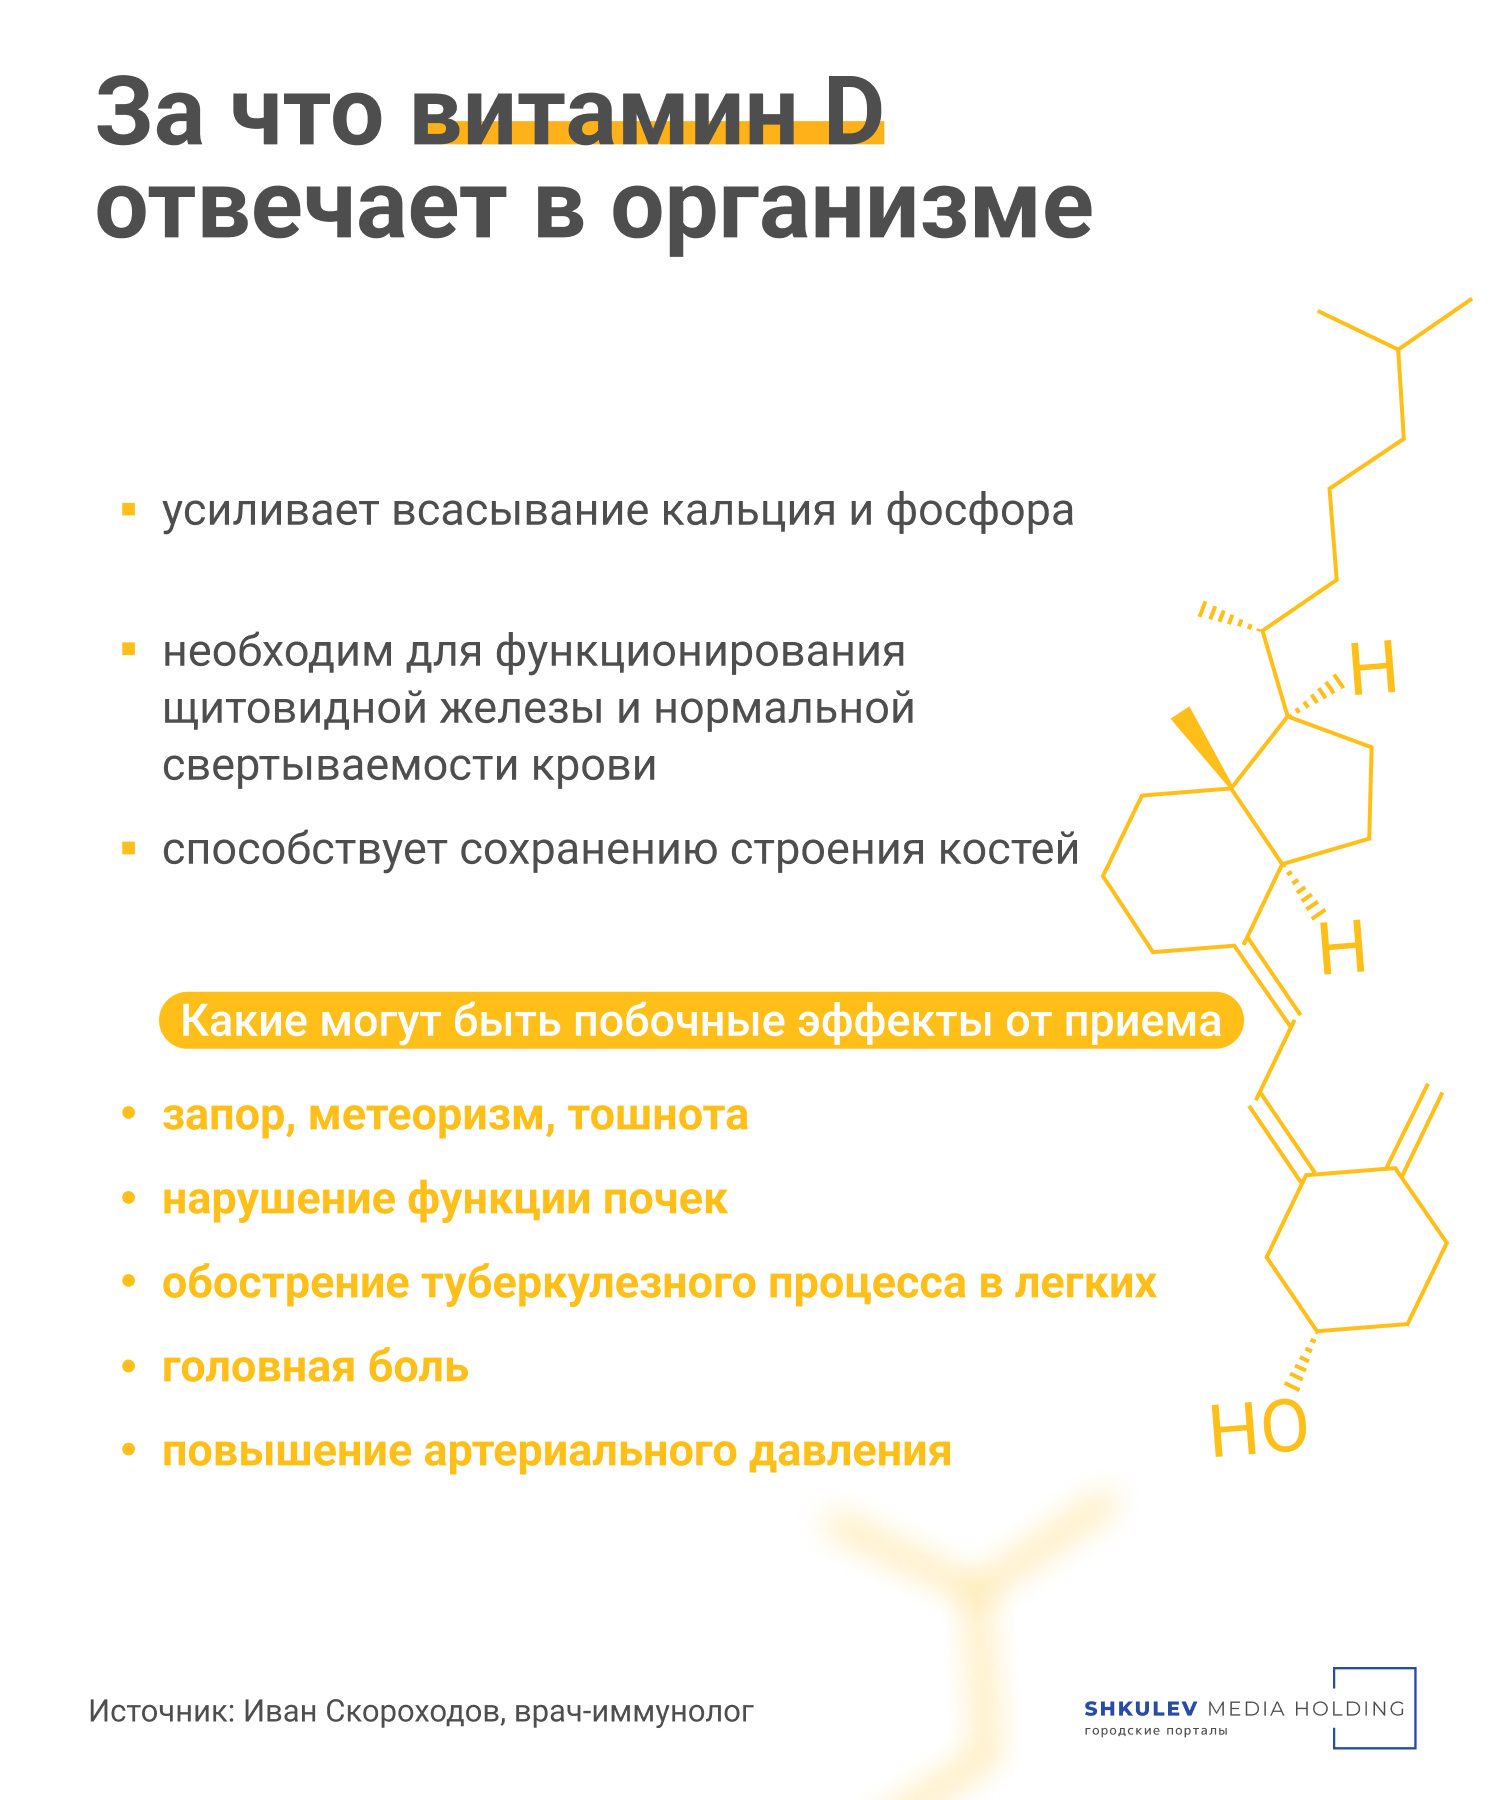 Дефицит витамина D есть у 80% россиян